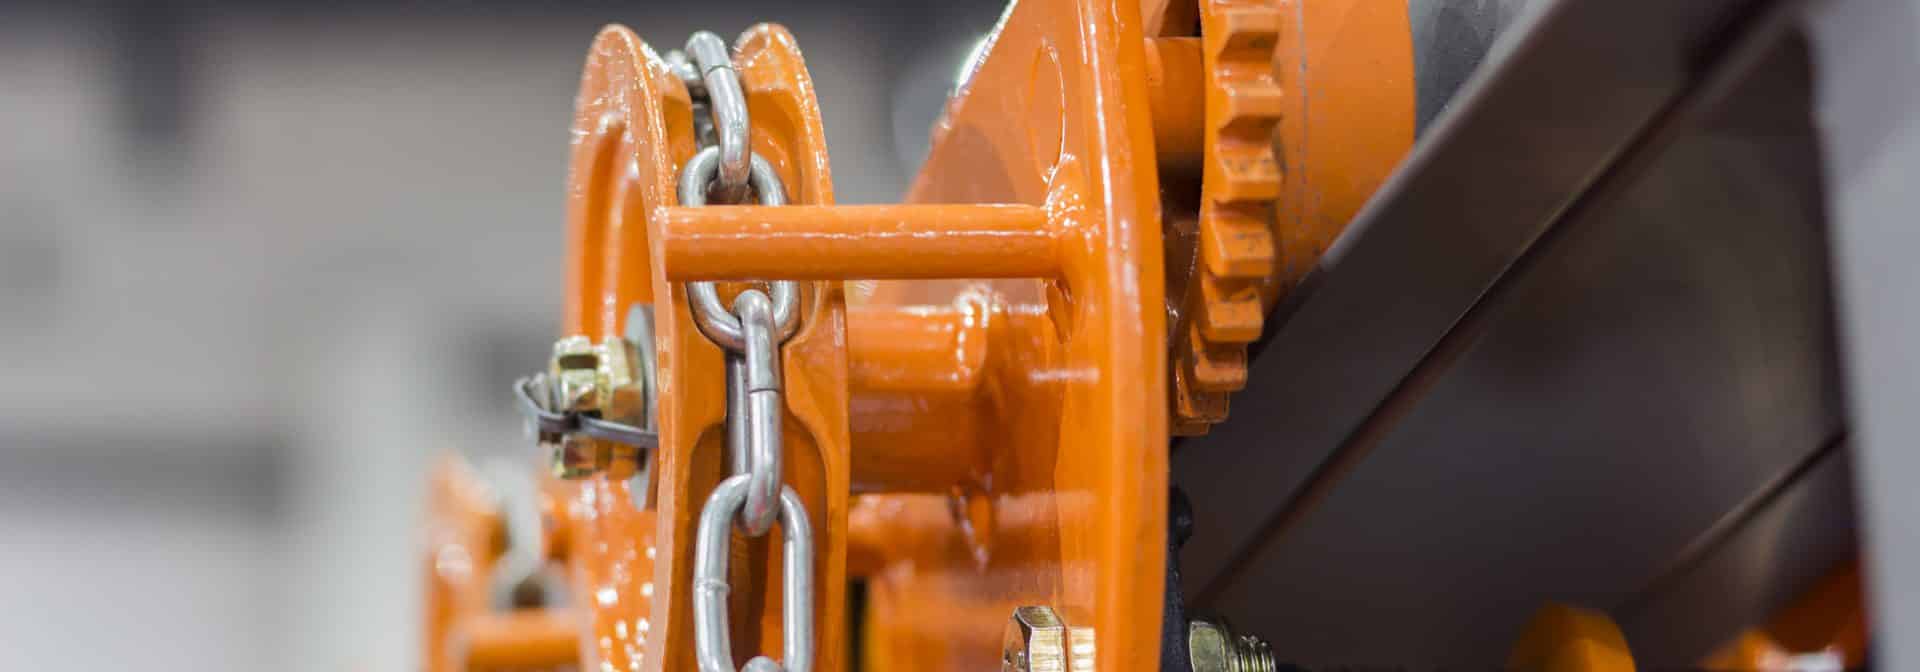 ELCEE | Industrial Steel Chains in orange hoists